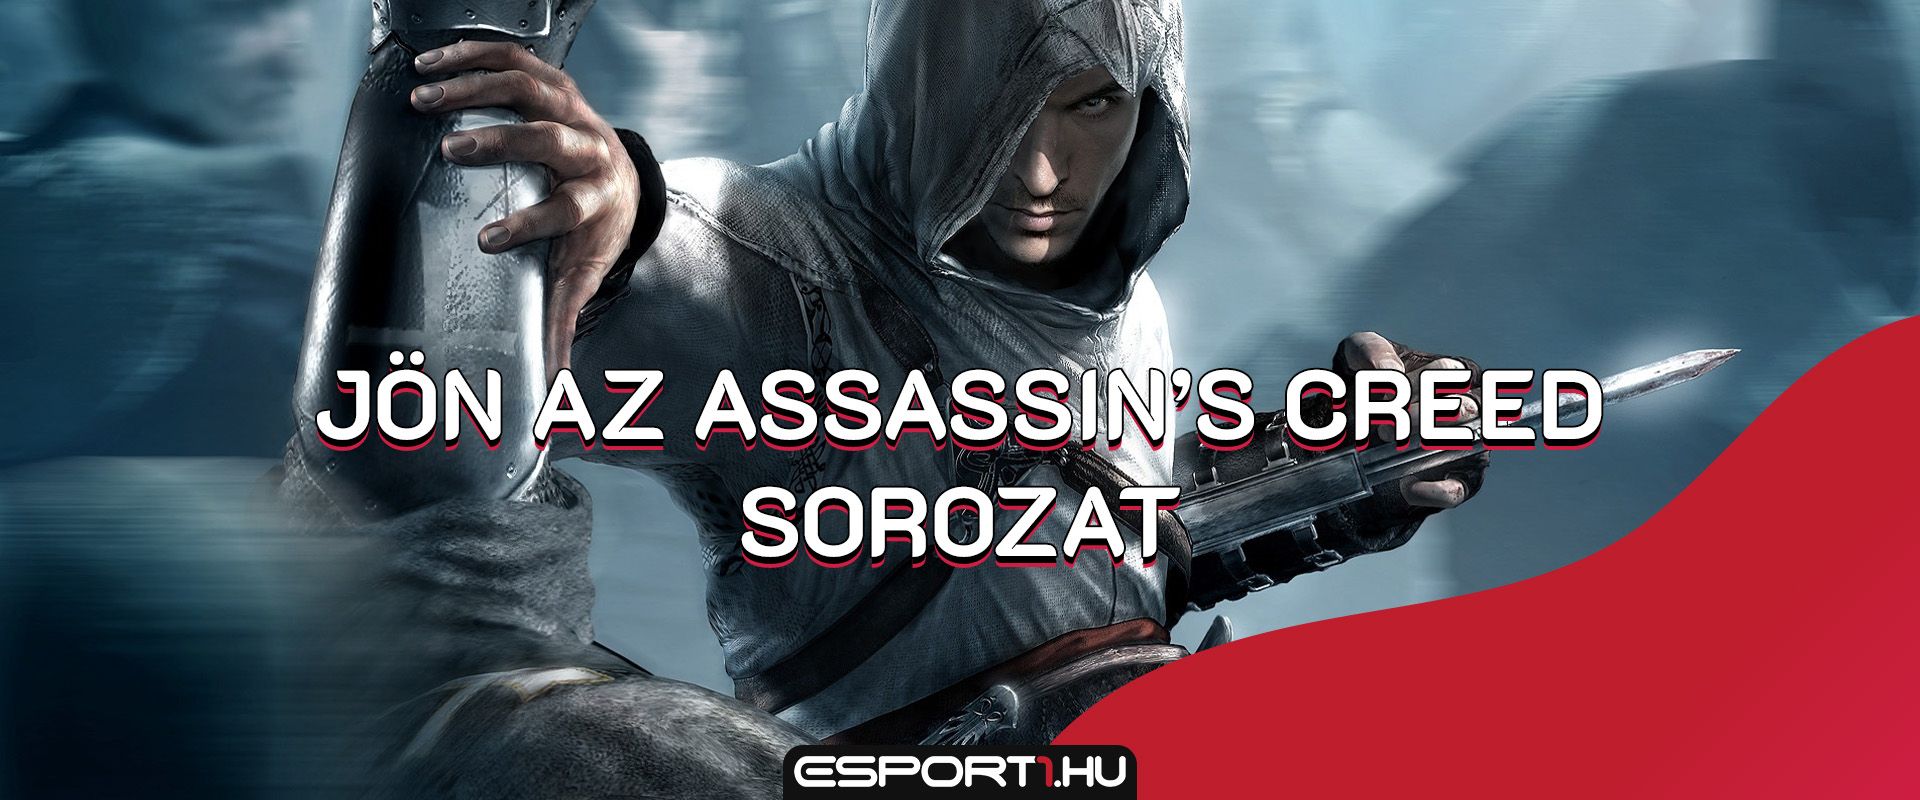 Élőszereplős Assassin's Creed sorozat érkezik Netflixre